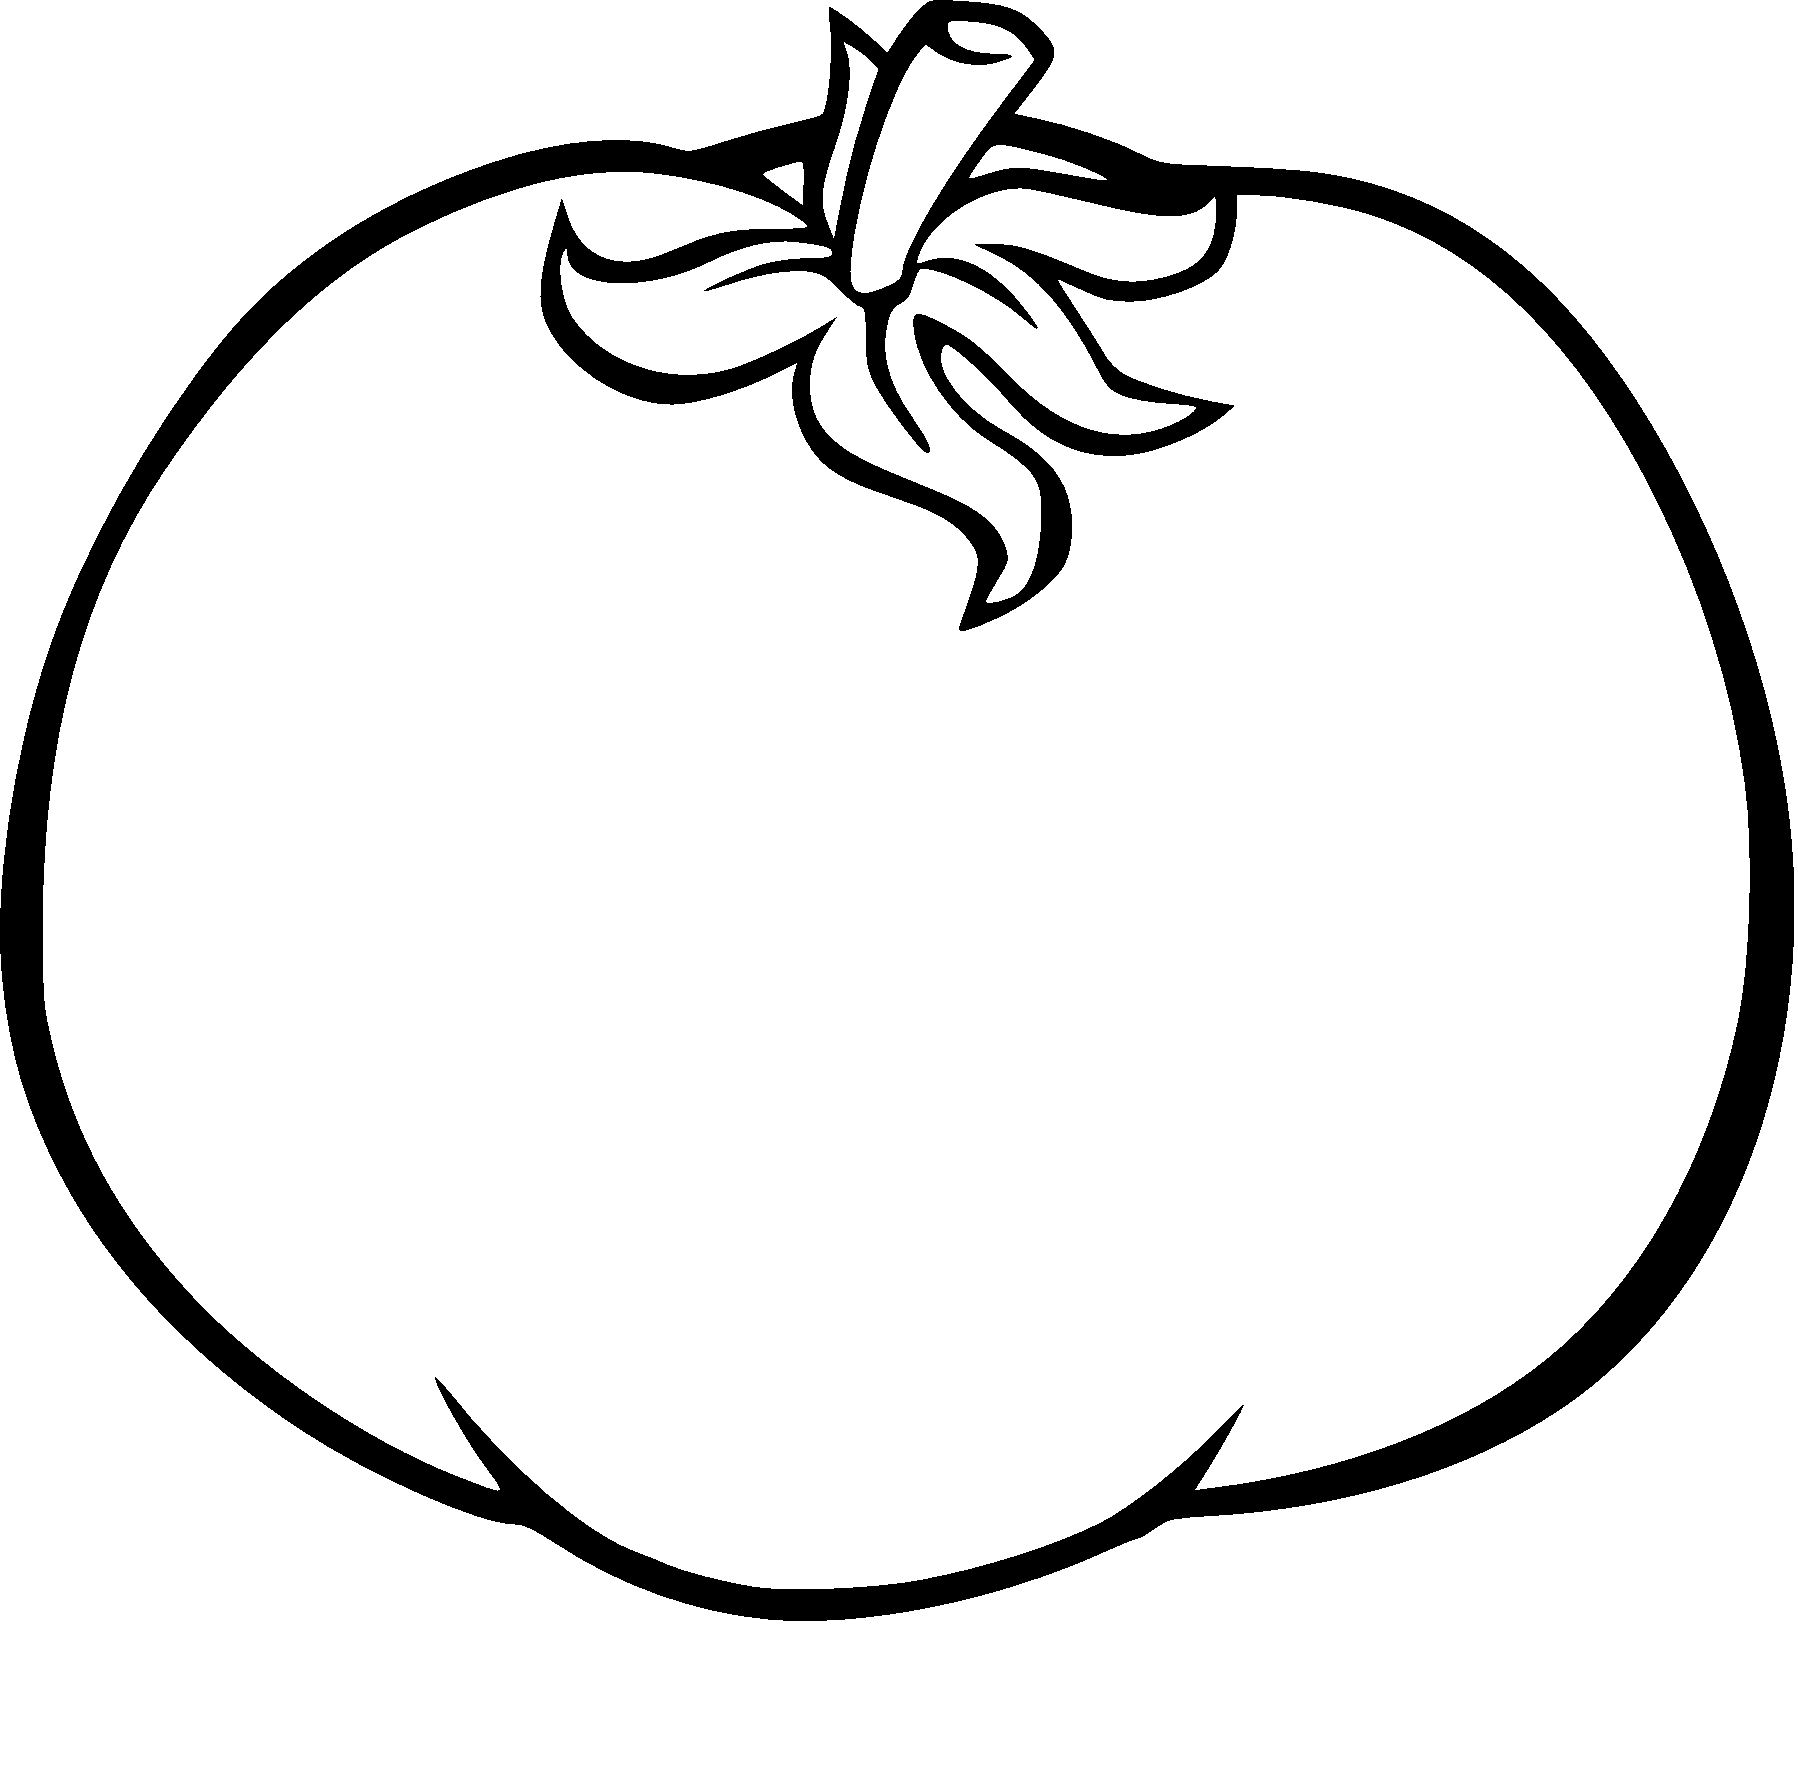 Disegno di Disegno del pomodoro e da colorare